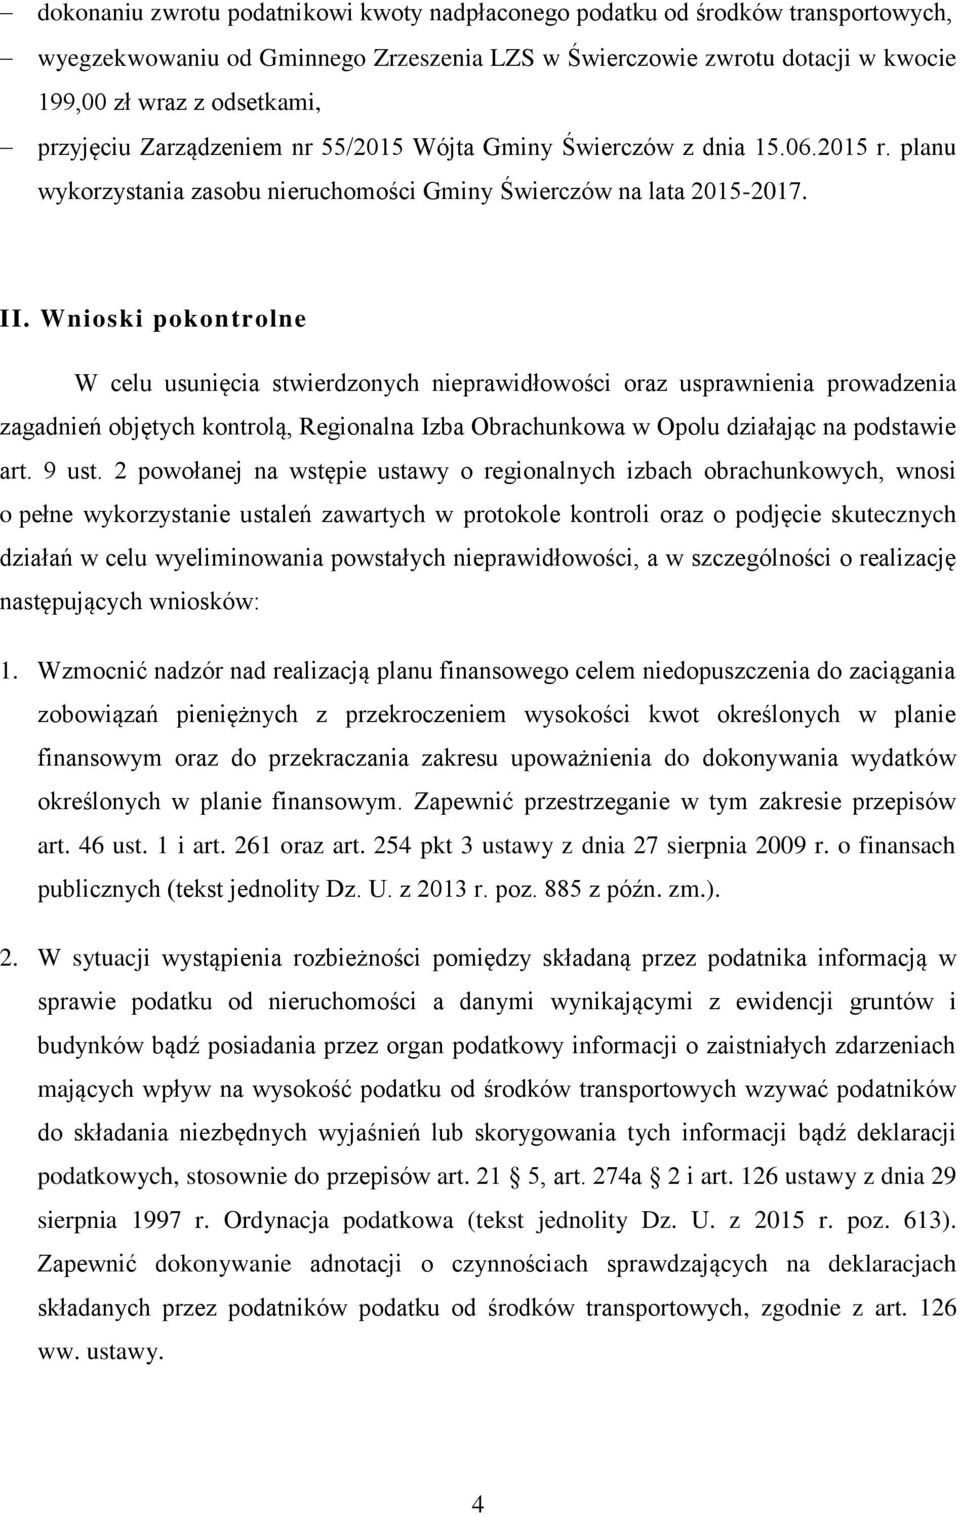 Wnioski pokontrolne W celu usunięcia stwierdzonych nieprawidłowości oraz usprawnienia prowadzenia zagadnień objętych kontrolą, Regionalna Izba Obrachunkowa w Opolu działając na podstawie art. 9 ust.